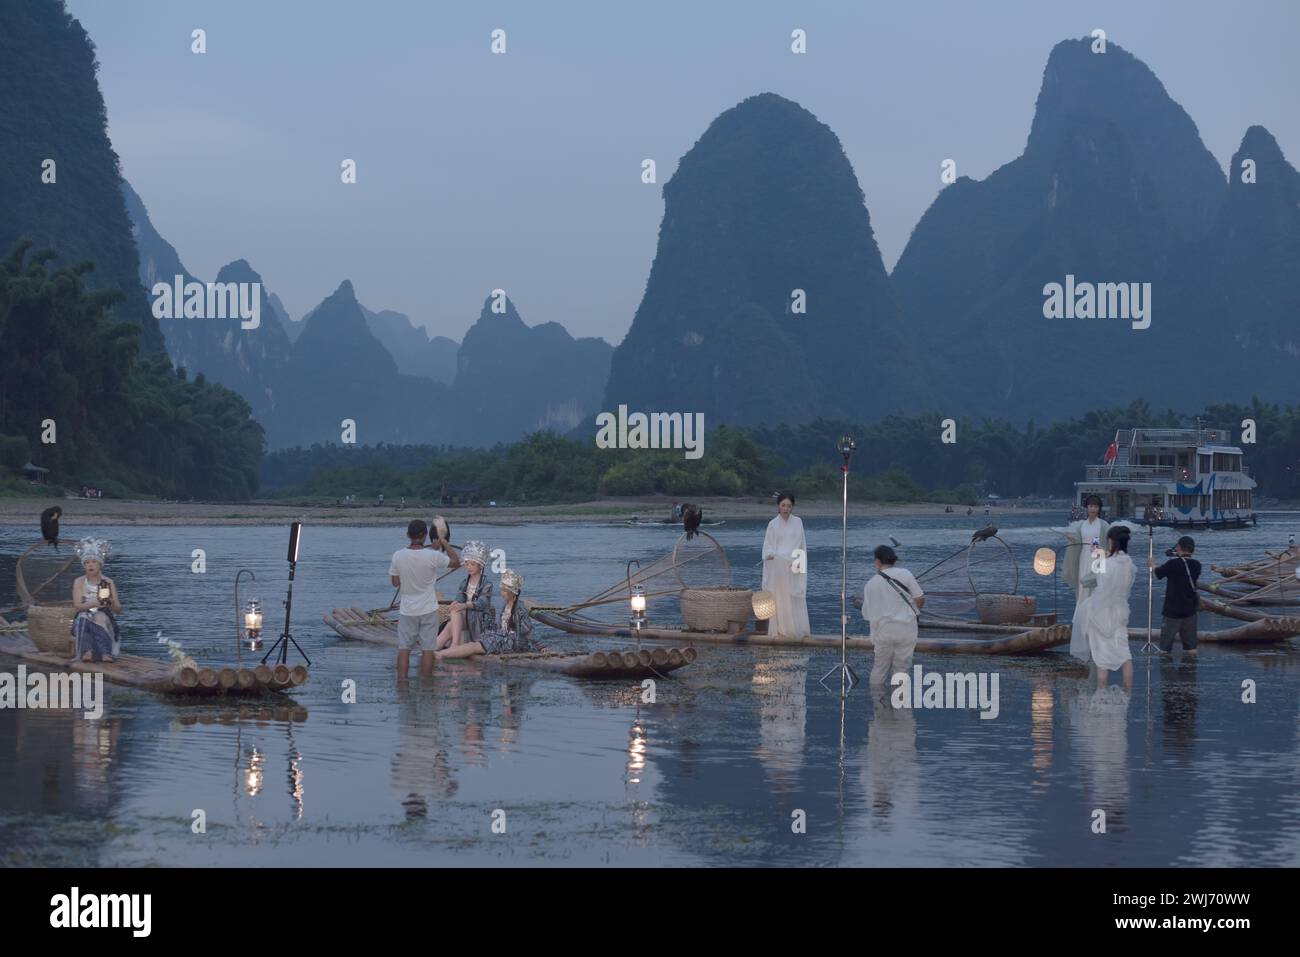 Entlang des Li-Flusses bieten Fotografen Fotodienstleistungen für Touristen in Nationalkostümen an Stockfoto